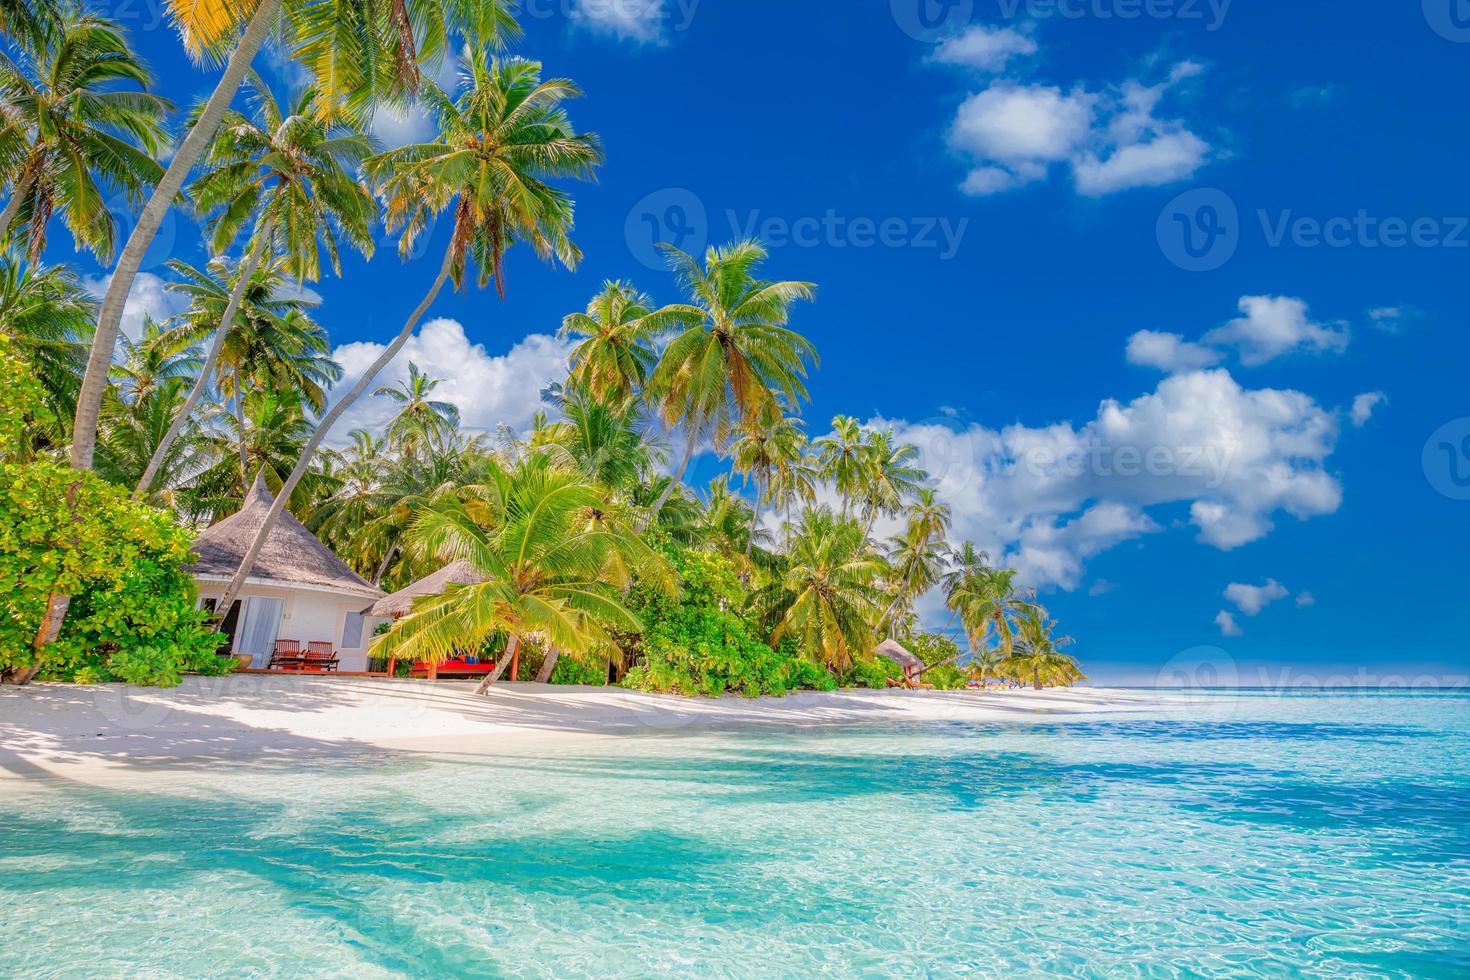 prachtig tropisch strand met wit zand, palmbomen, turquoise oceaan tegen blauwe lucht met wolken op zonnige zomerdag. perfecte landschapsachtergrond voor een ontspannen vakantie, eiland maldiven. foto